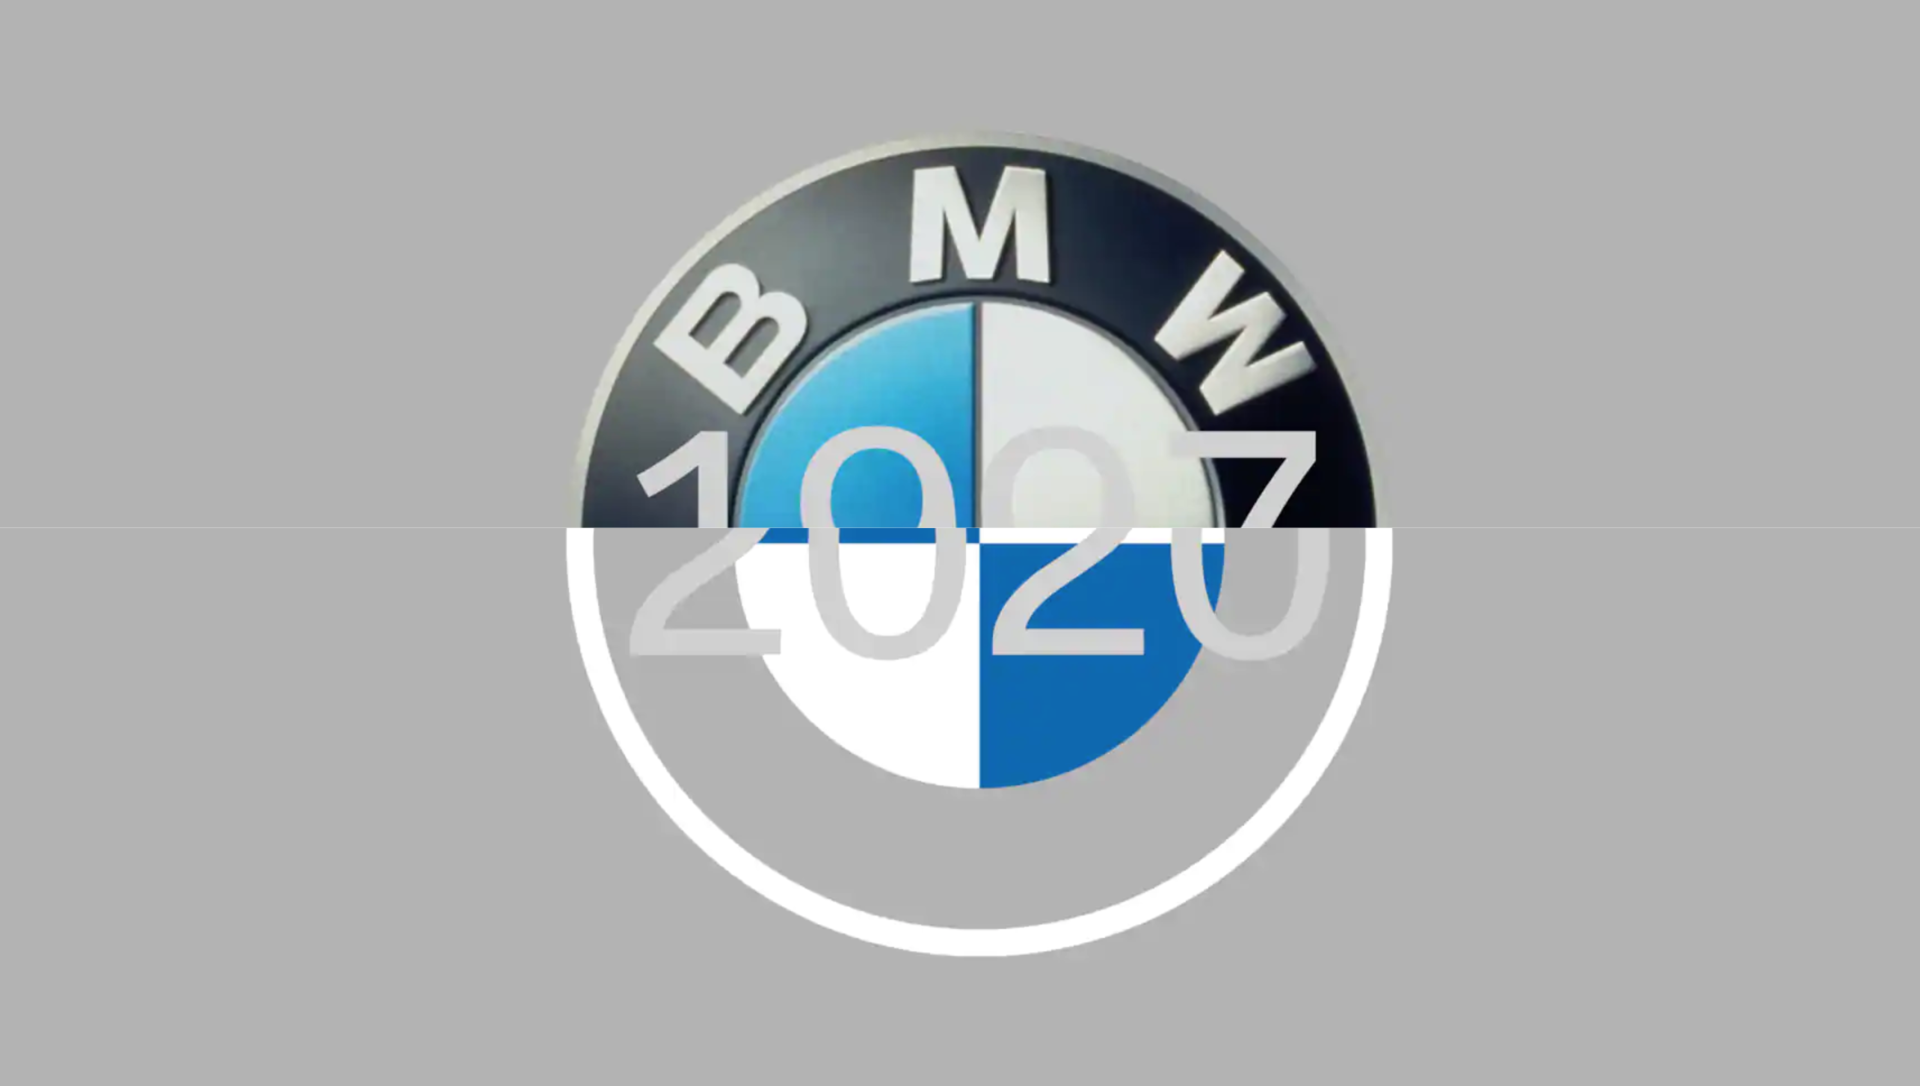 El significado del logo de BMW